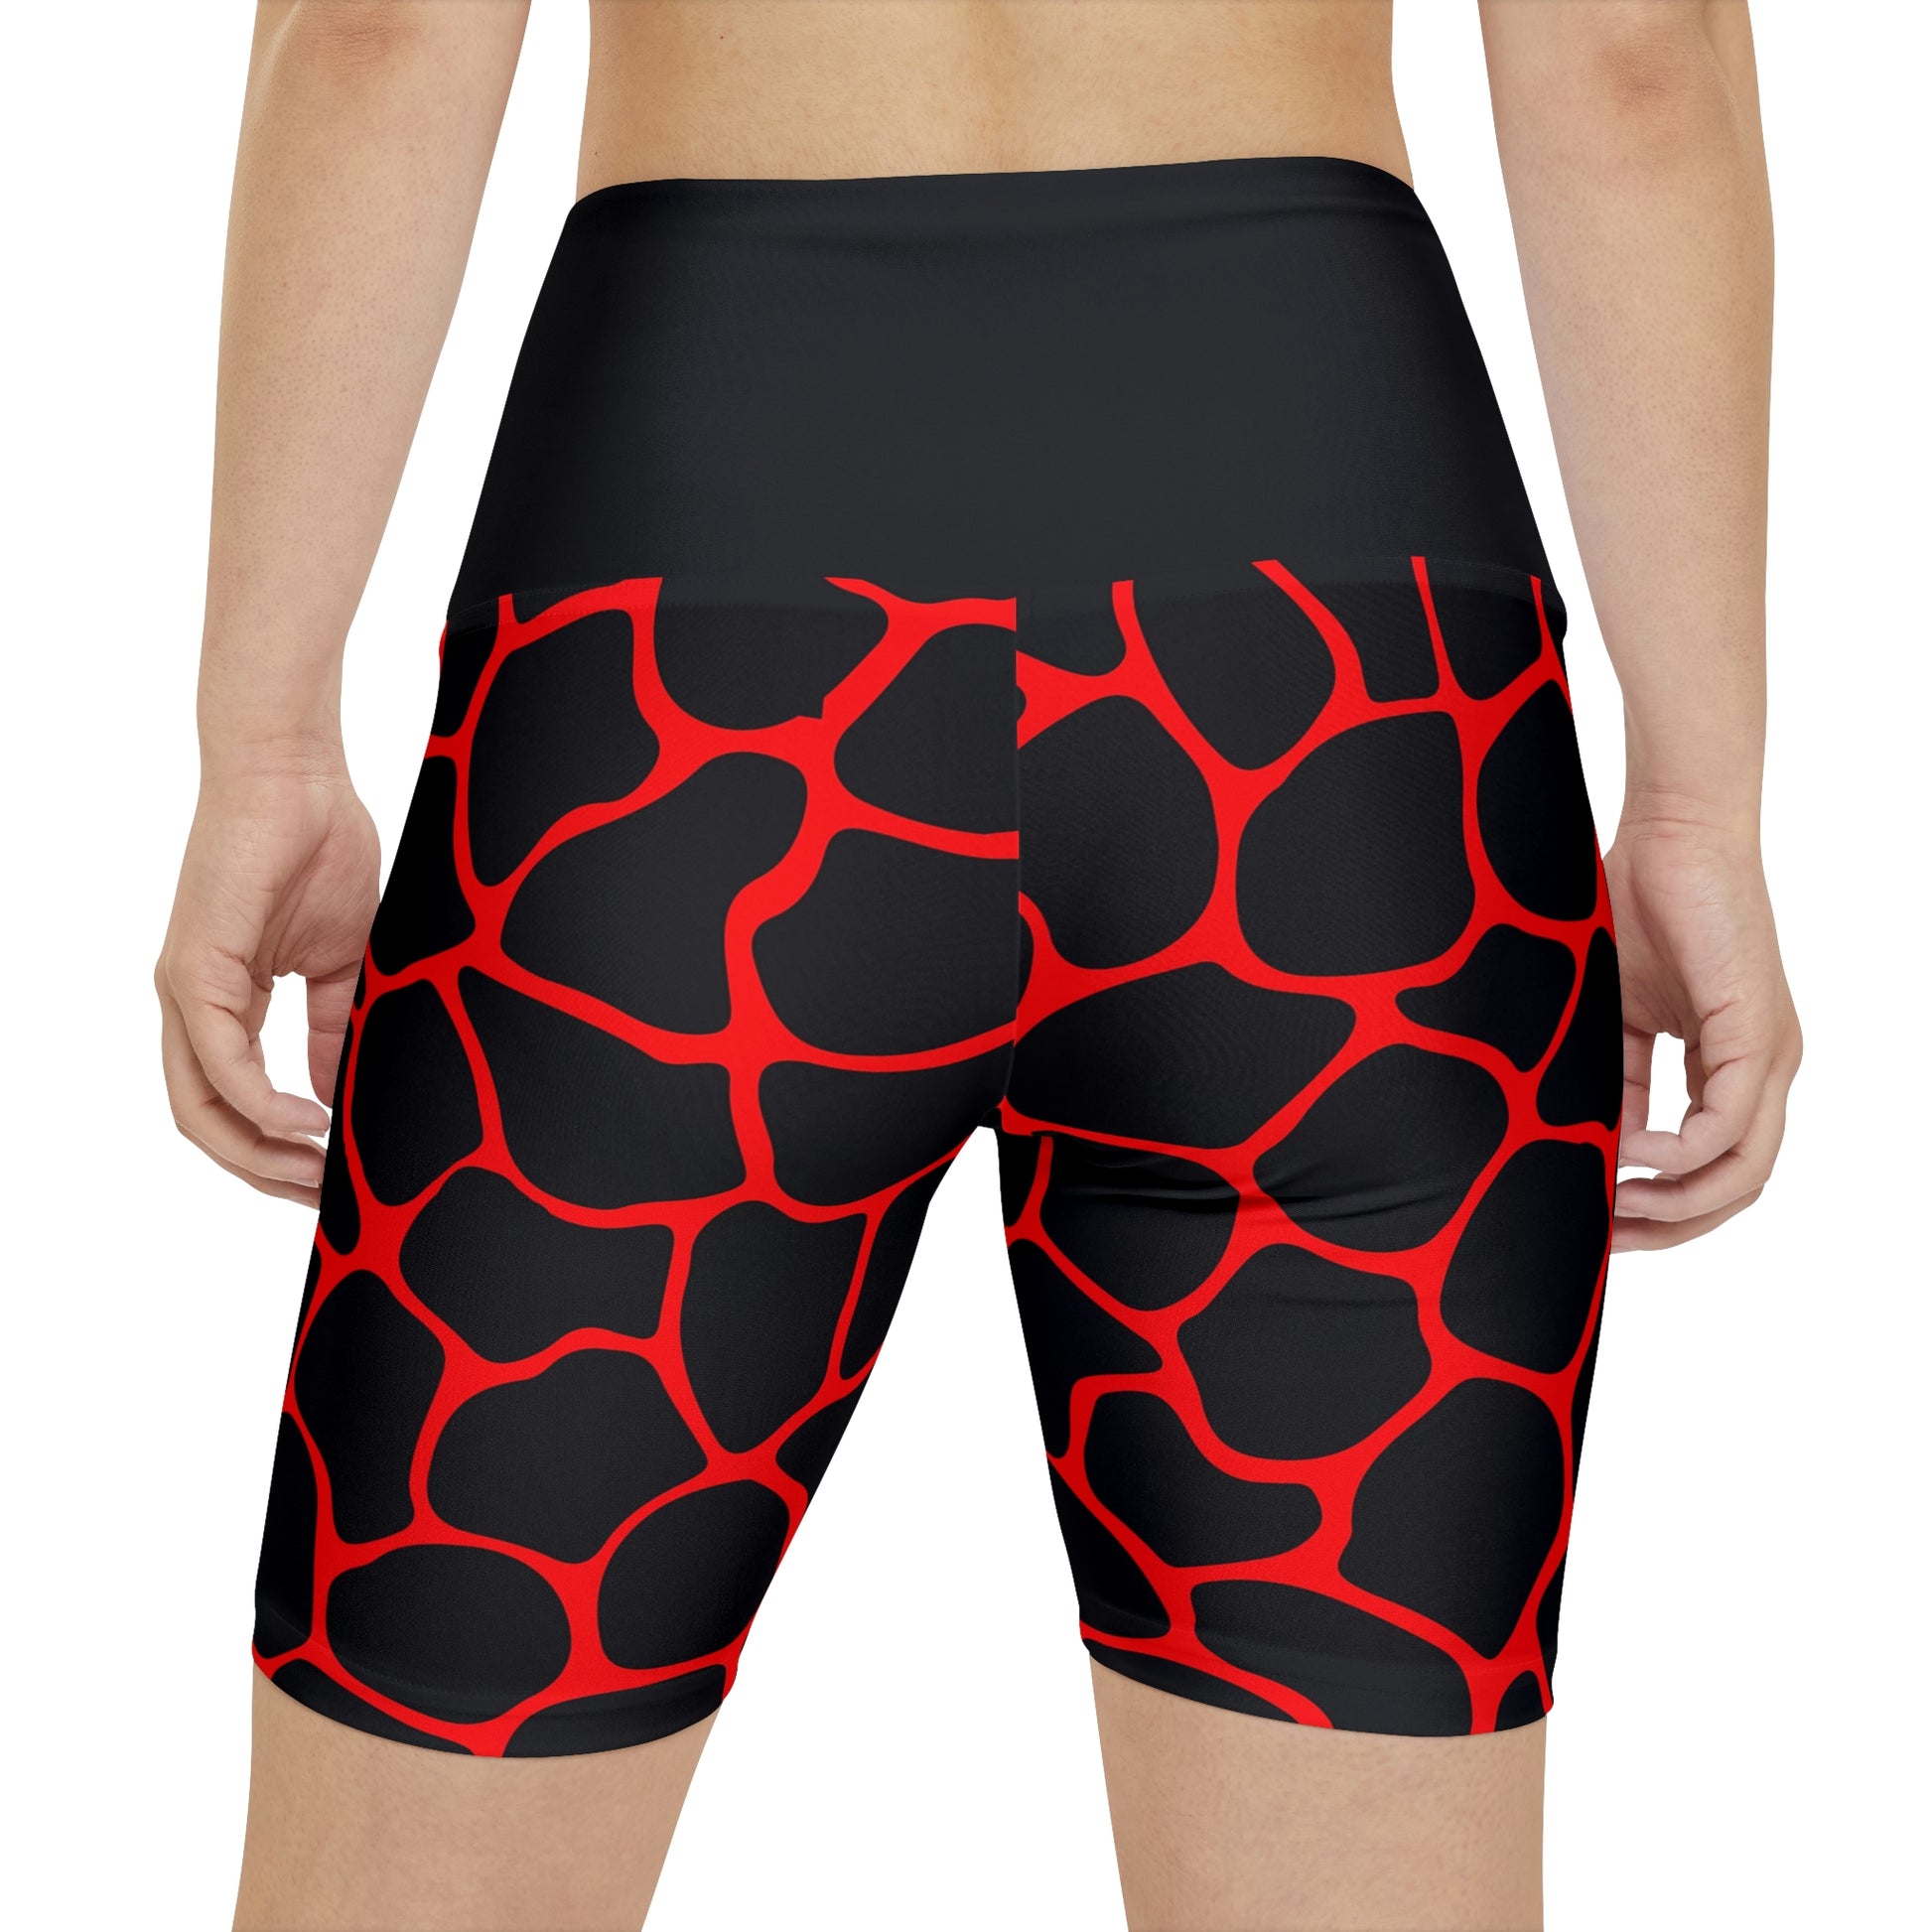 Battle Box Red/Black Women's Workout Shorts-T1 – Battle Box Wellness